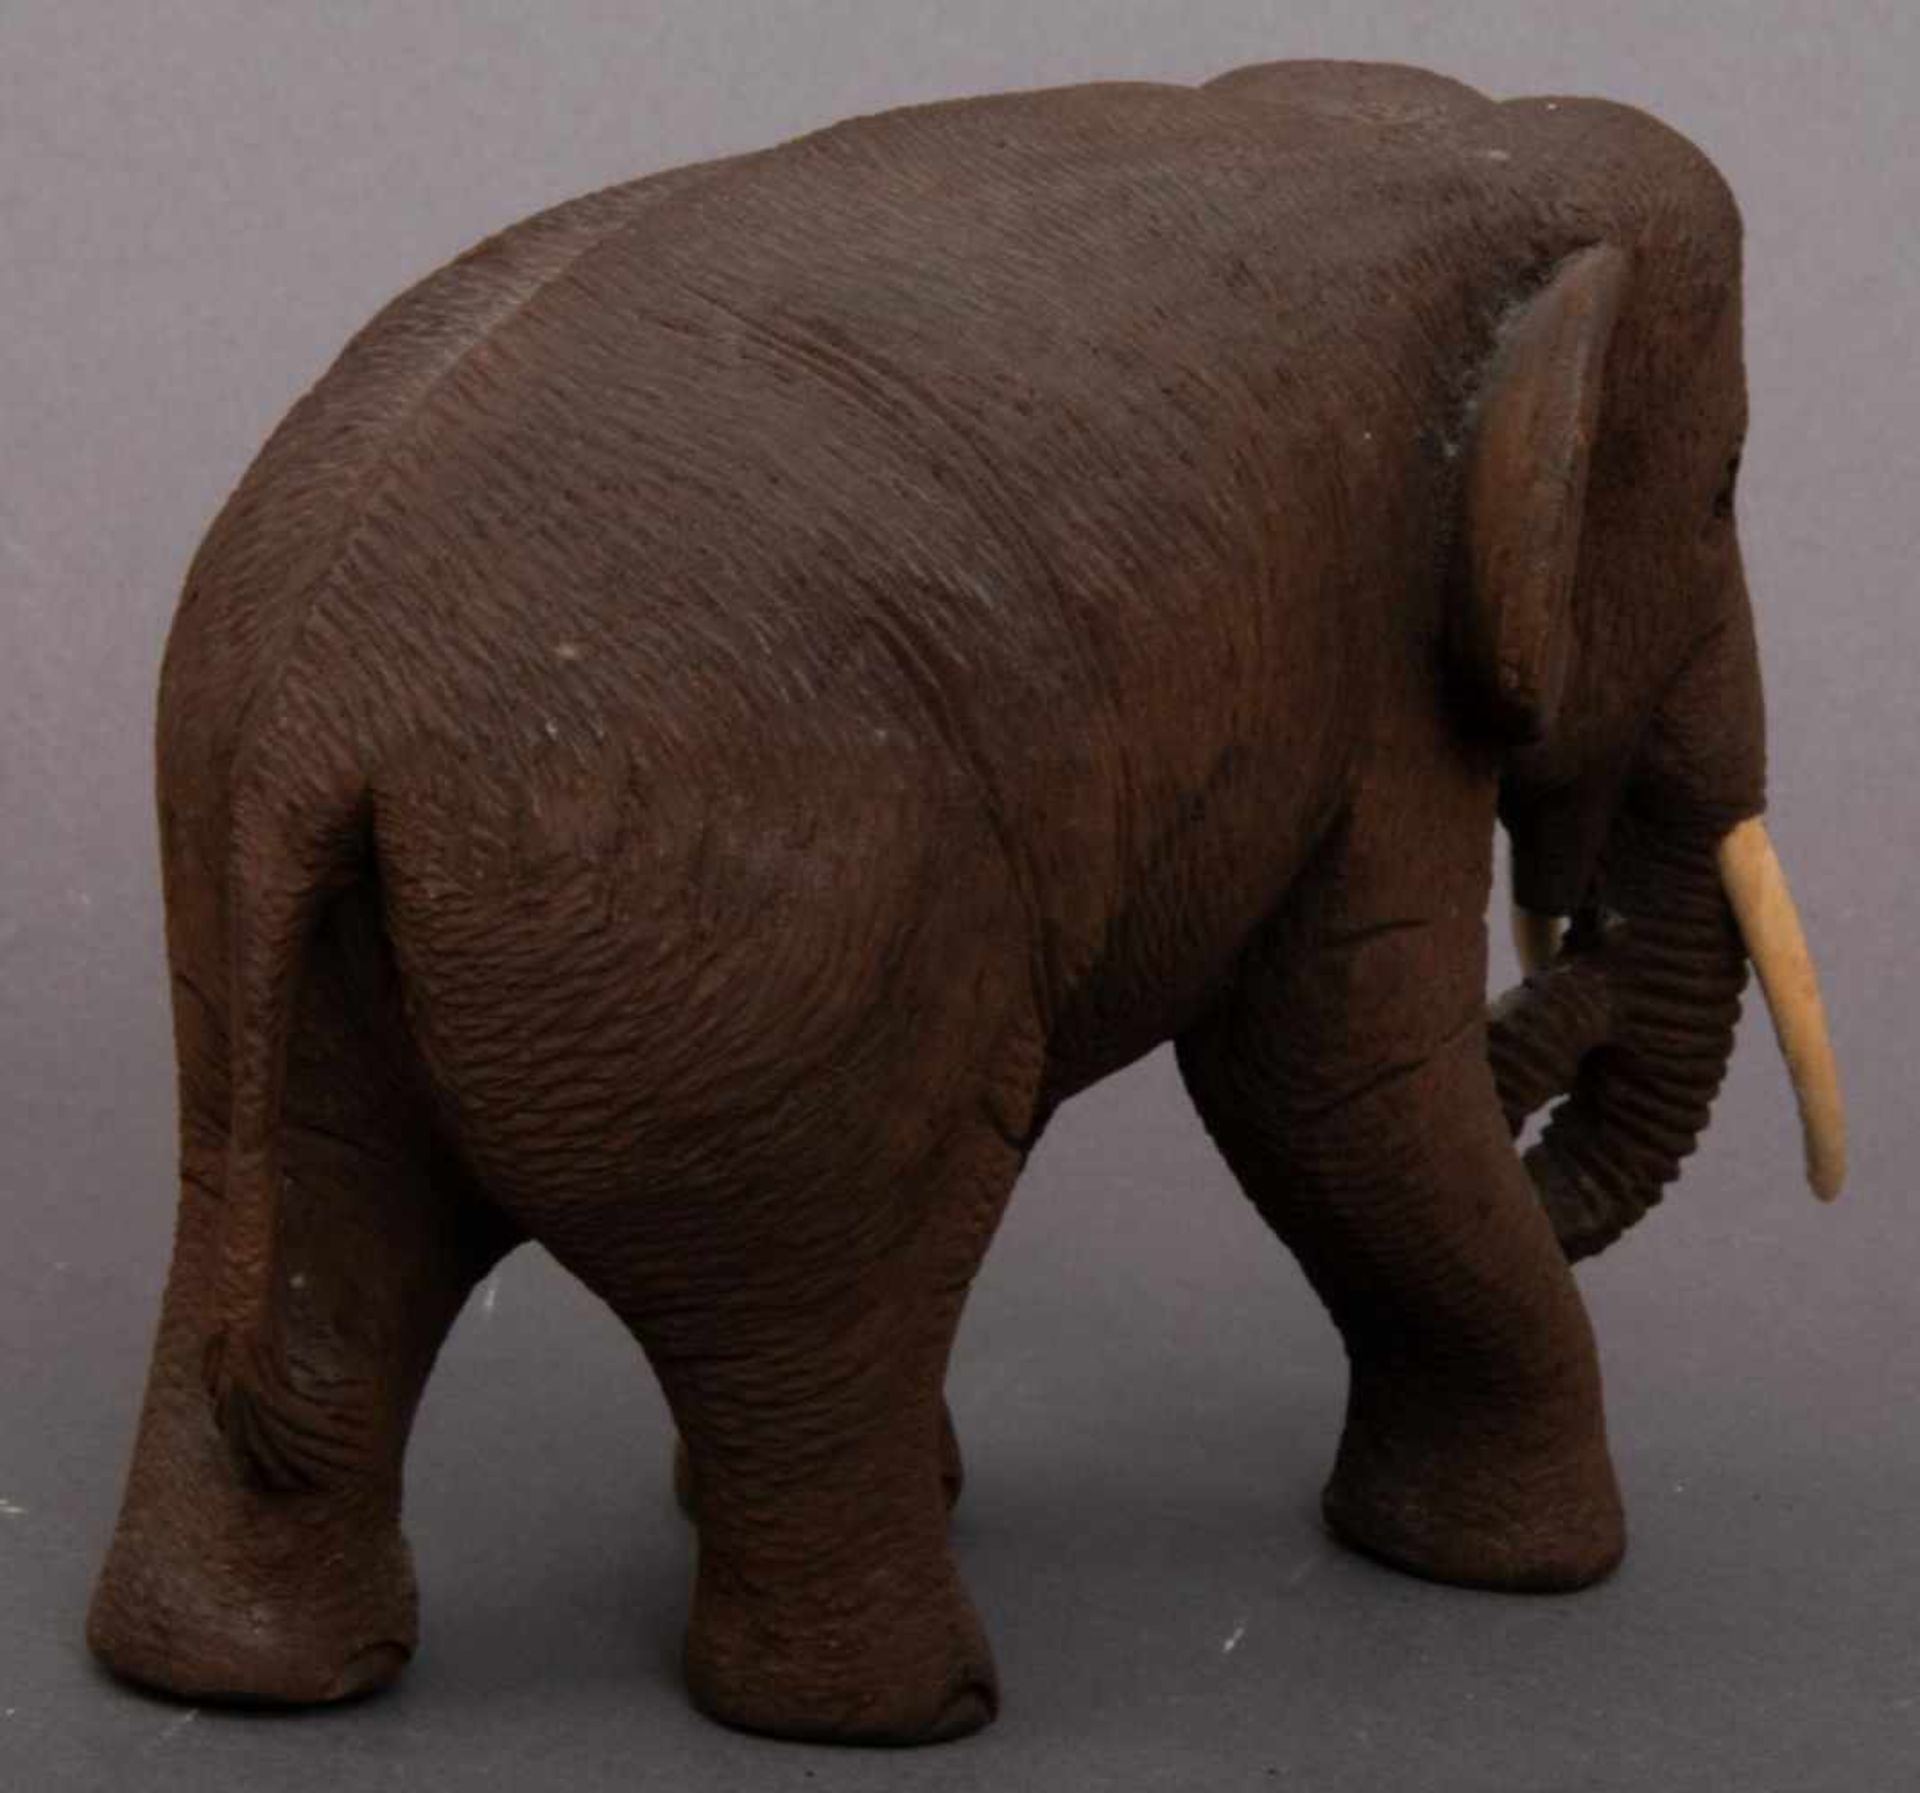 3 geschnitzte Elefanten, dunkles Hartholz, Stoßzähne aus Knochen/Bein. Max. Höhe ca. 15,5 cm, max. - Bild 3 aus 6